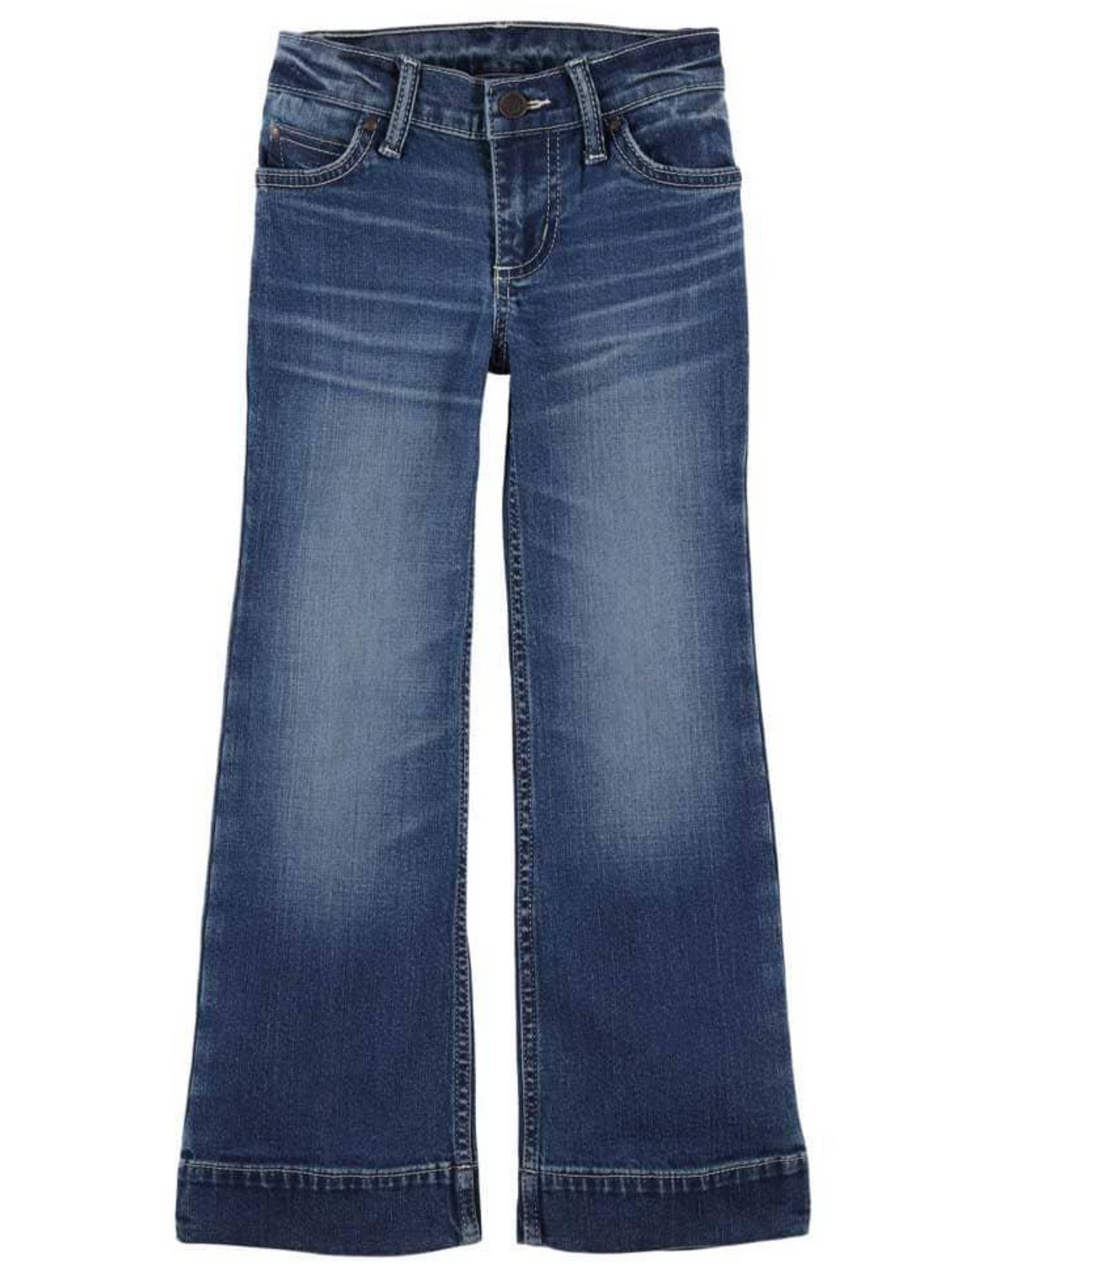 WRANGLER GIRL'S TROUSER Jeans - OLD FORT WESTERN